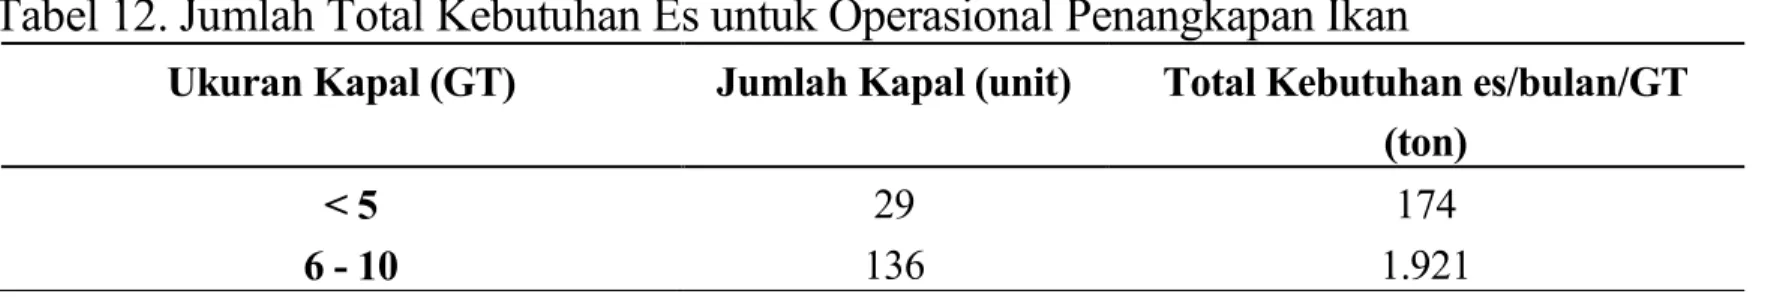 Tabel 10. Kebutuhan Es untuk Operasional Kapal 51-100 GT Ukuran Kapal  Jumlah 